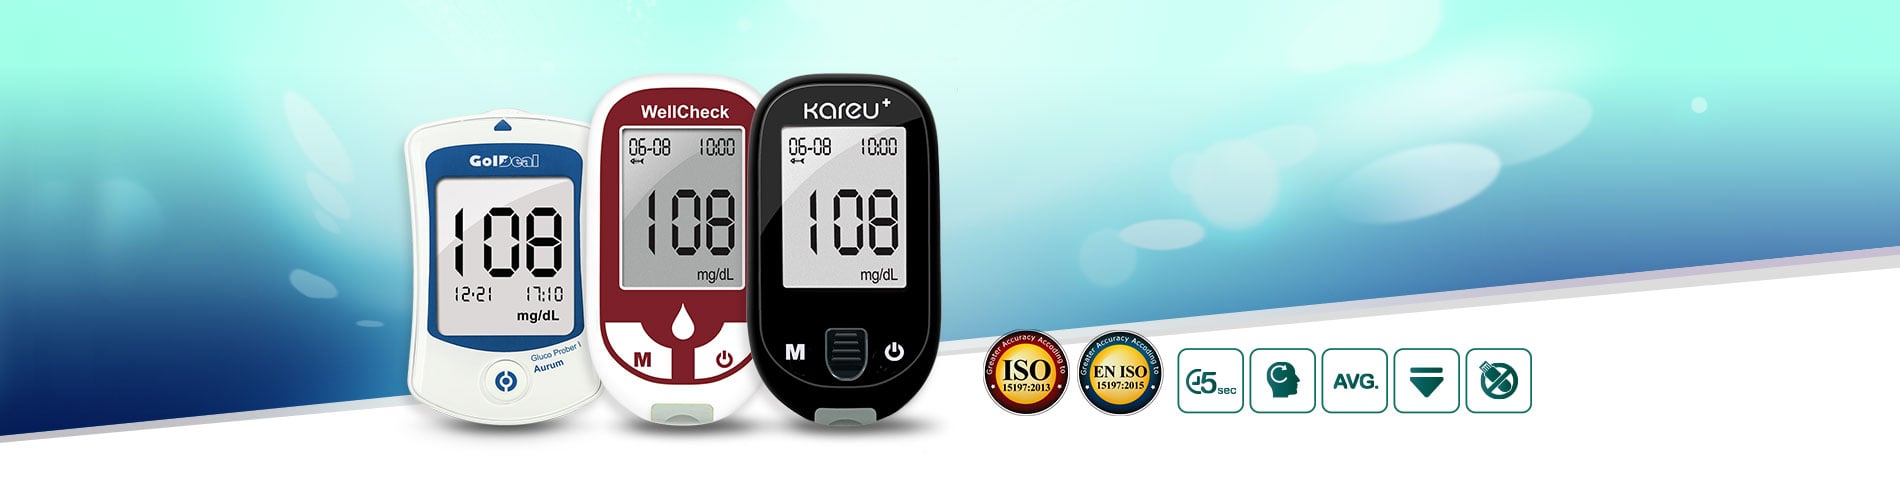 精確 快速 方便 克優加血糖監測系統 符合 ISO 13485, ISO 15197, CE